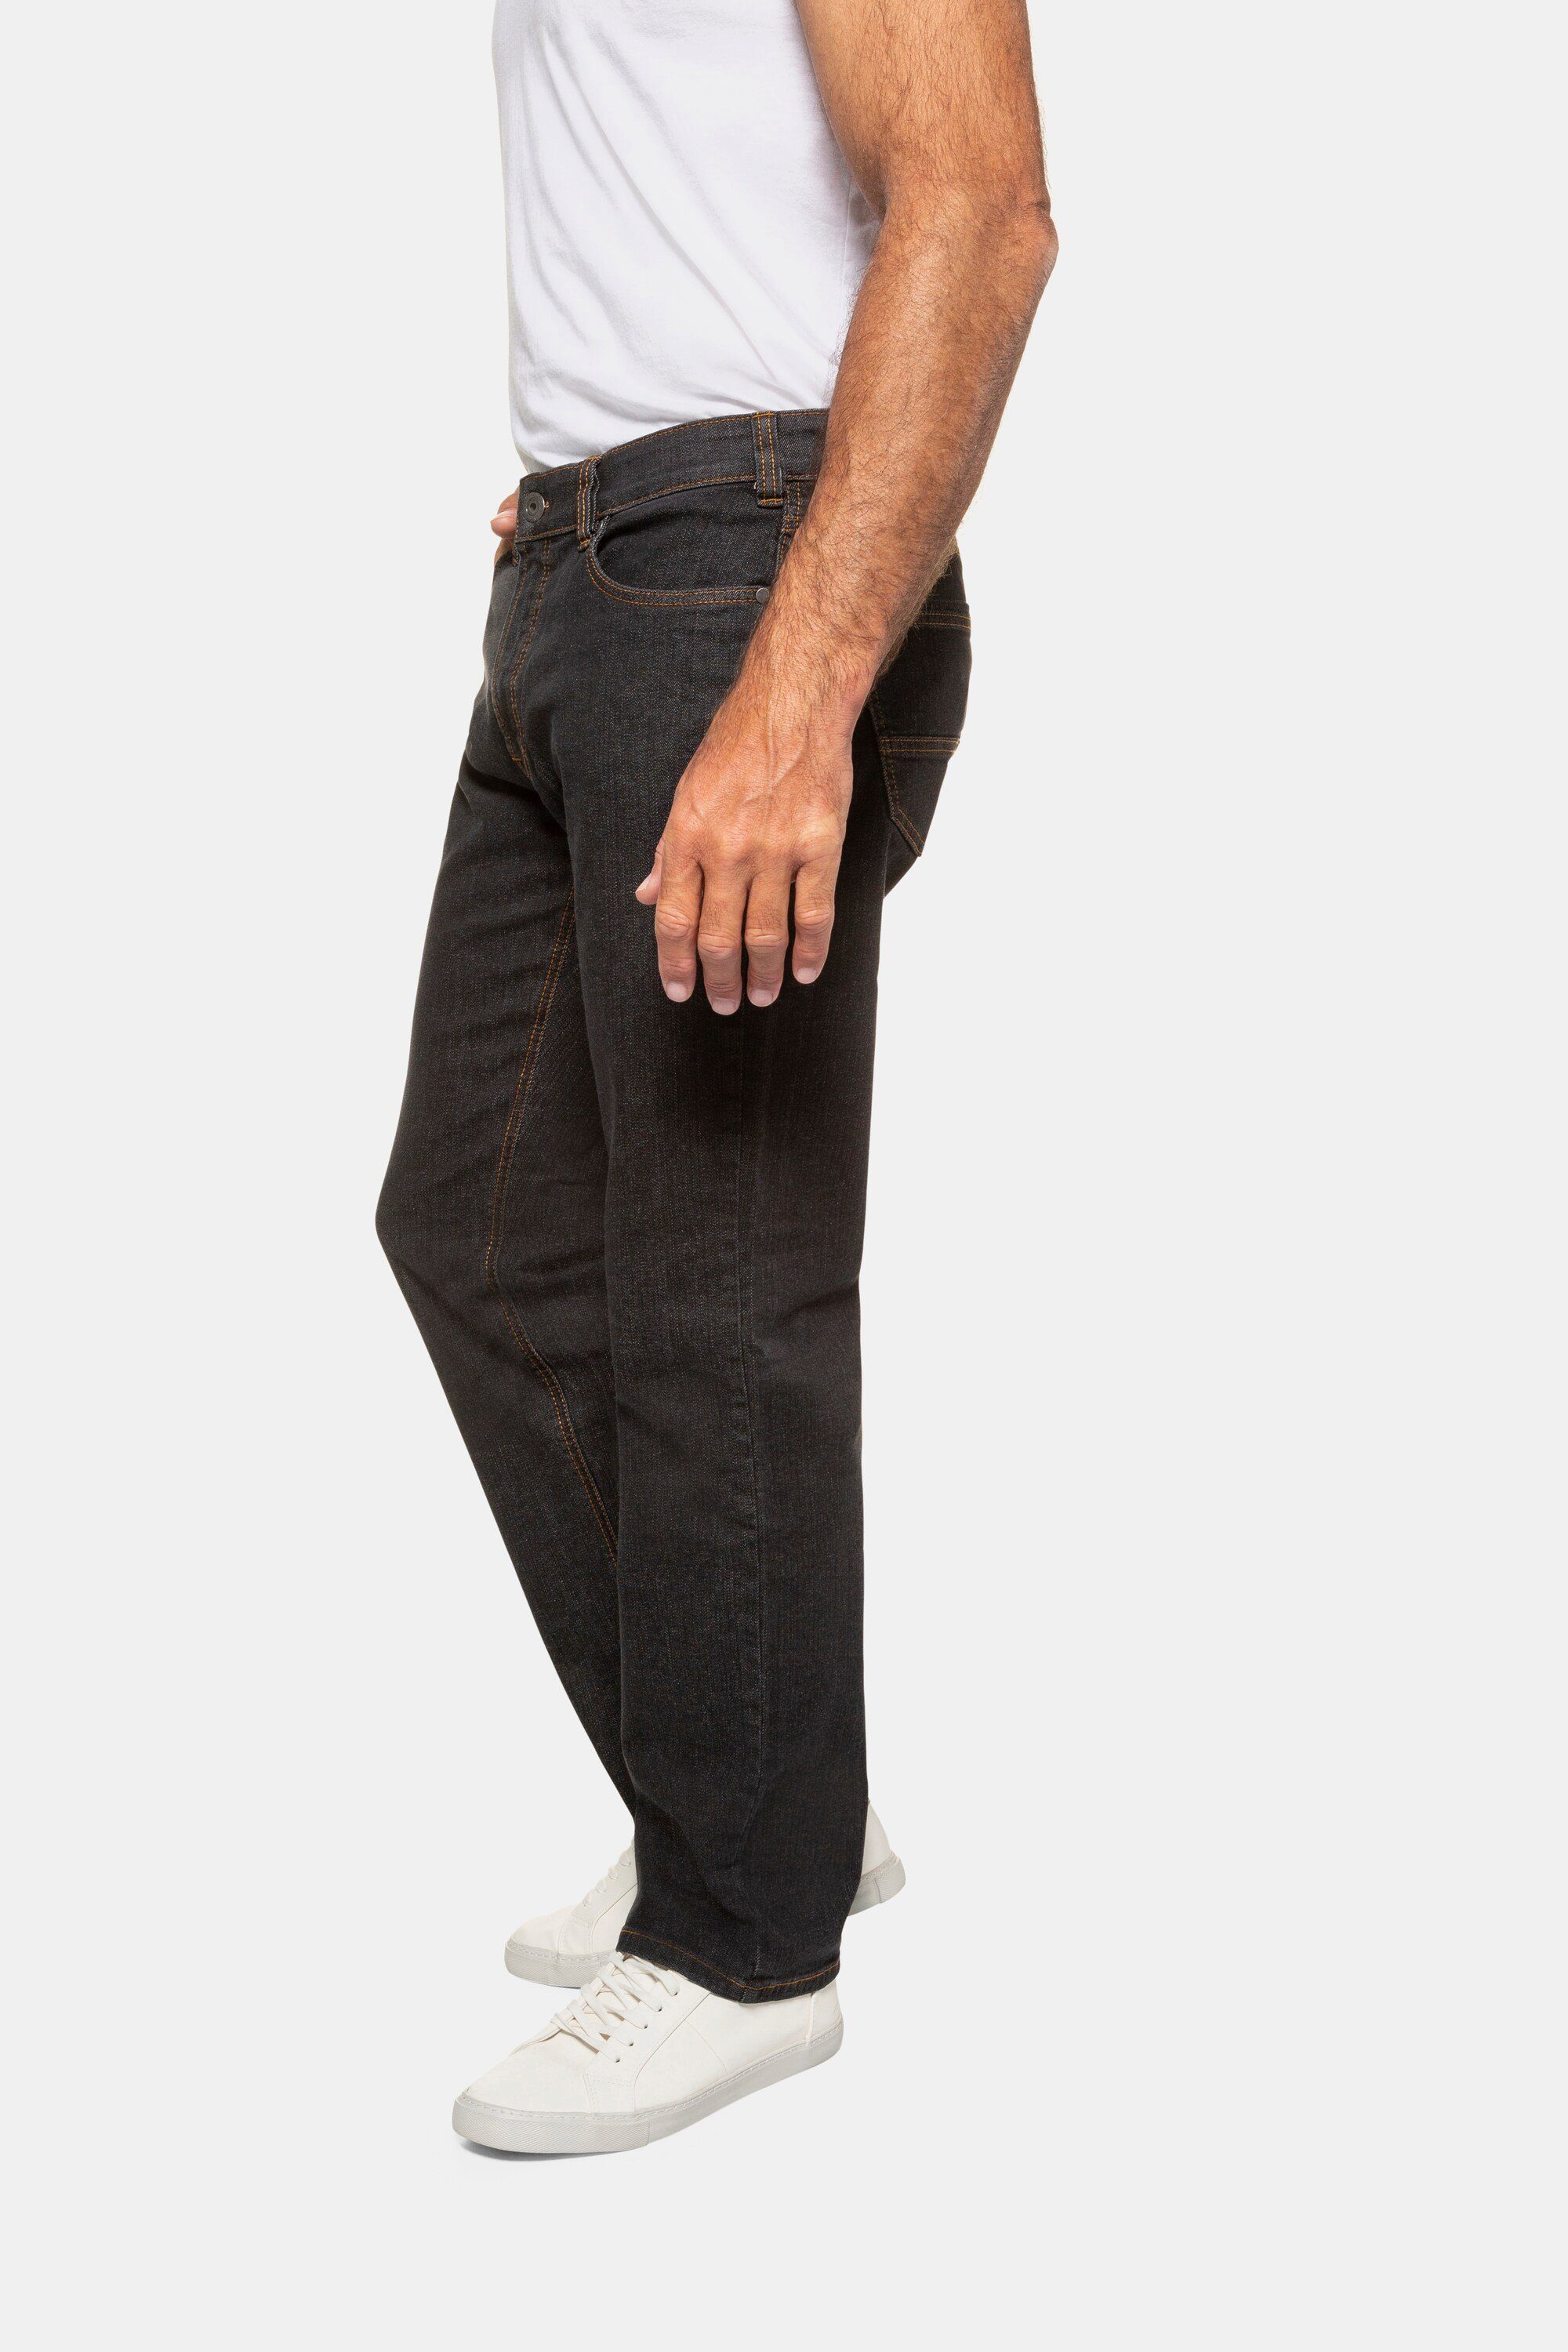 black Fit JP1880 5-Pocket Cargohose elastischer Jeans Komfortbund Regular